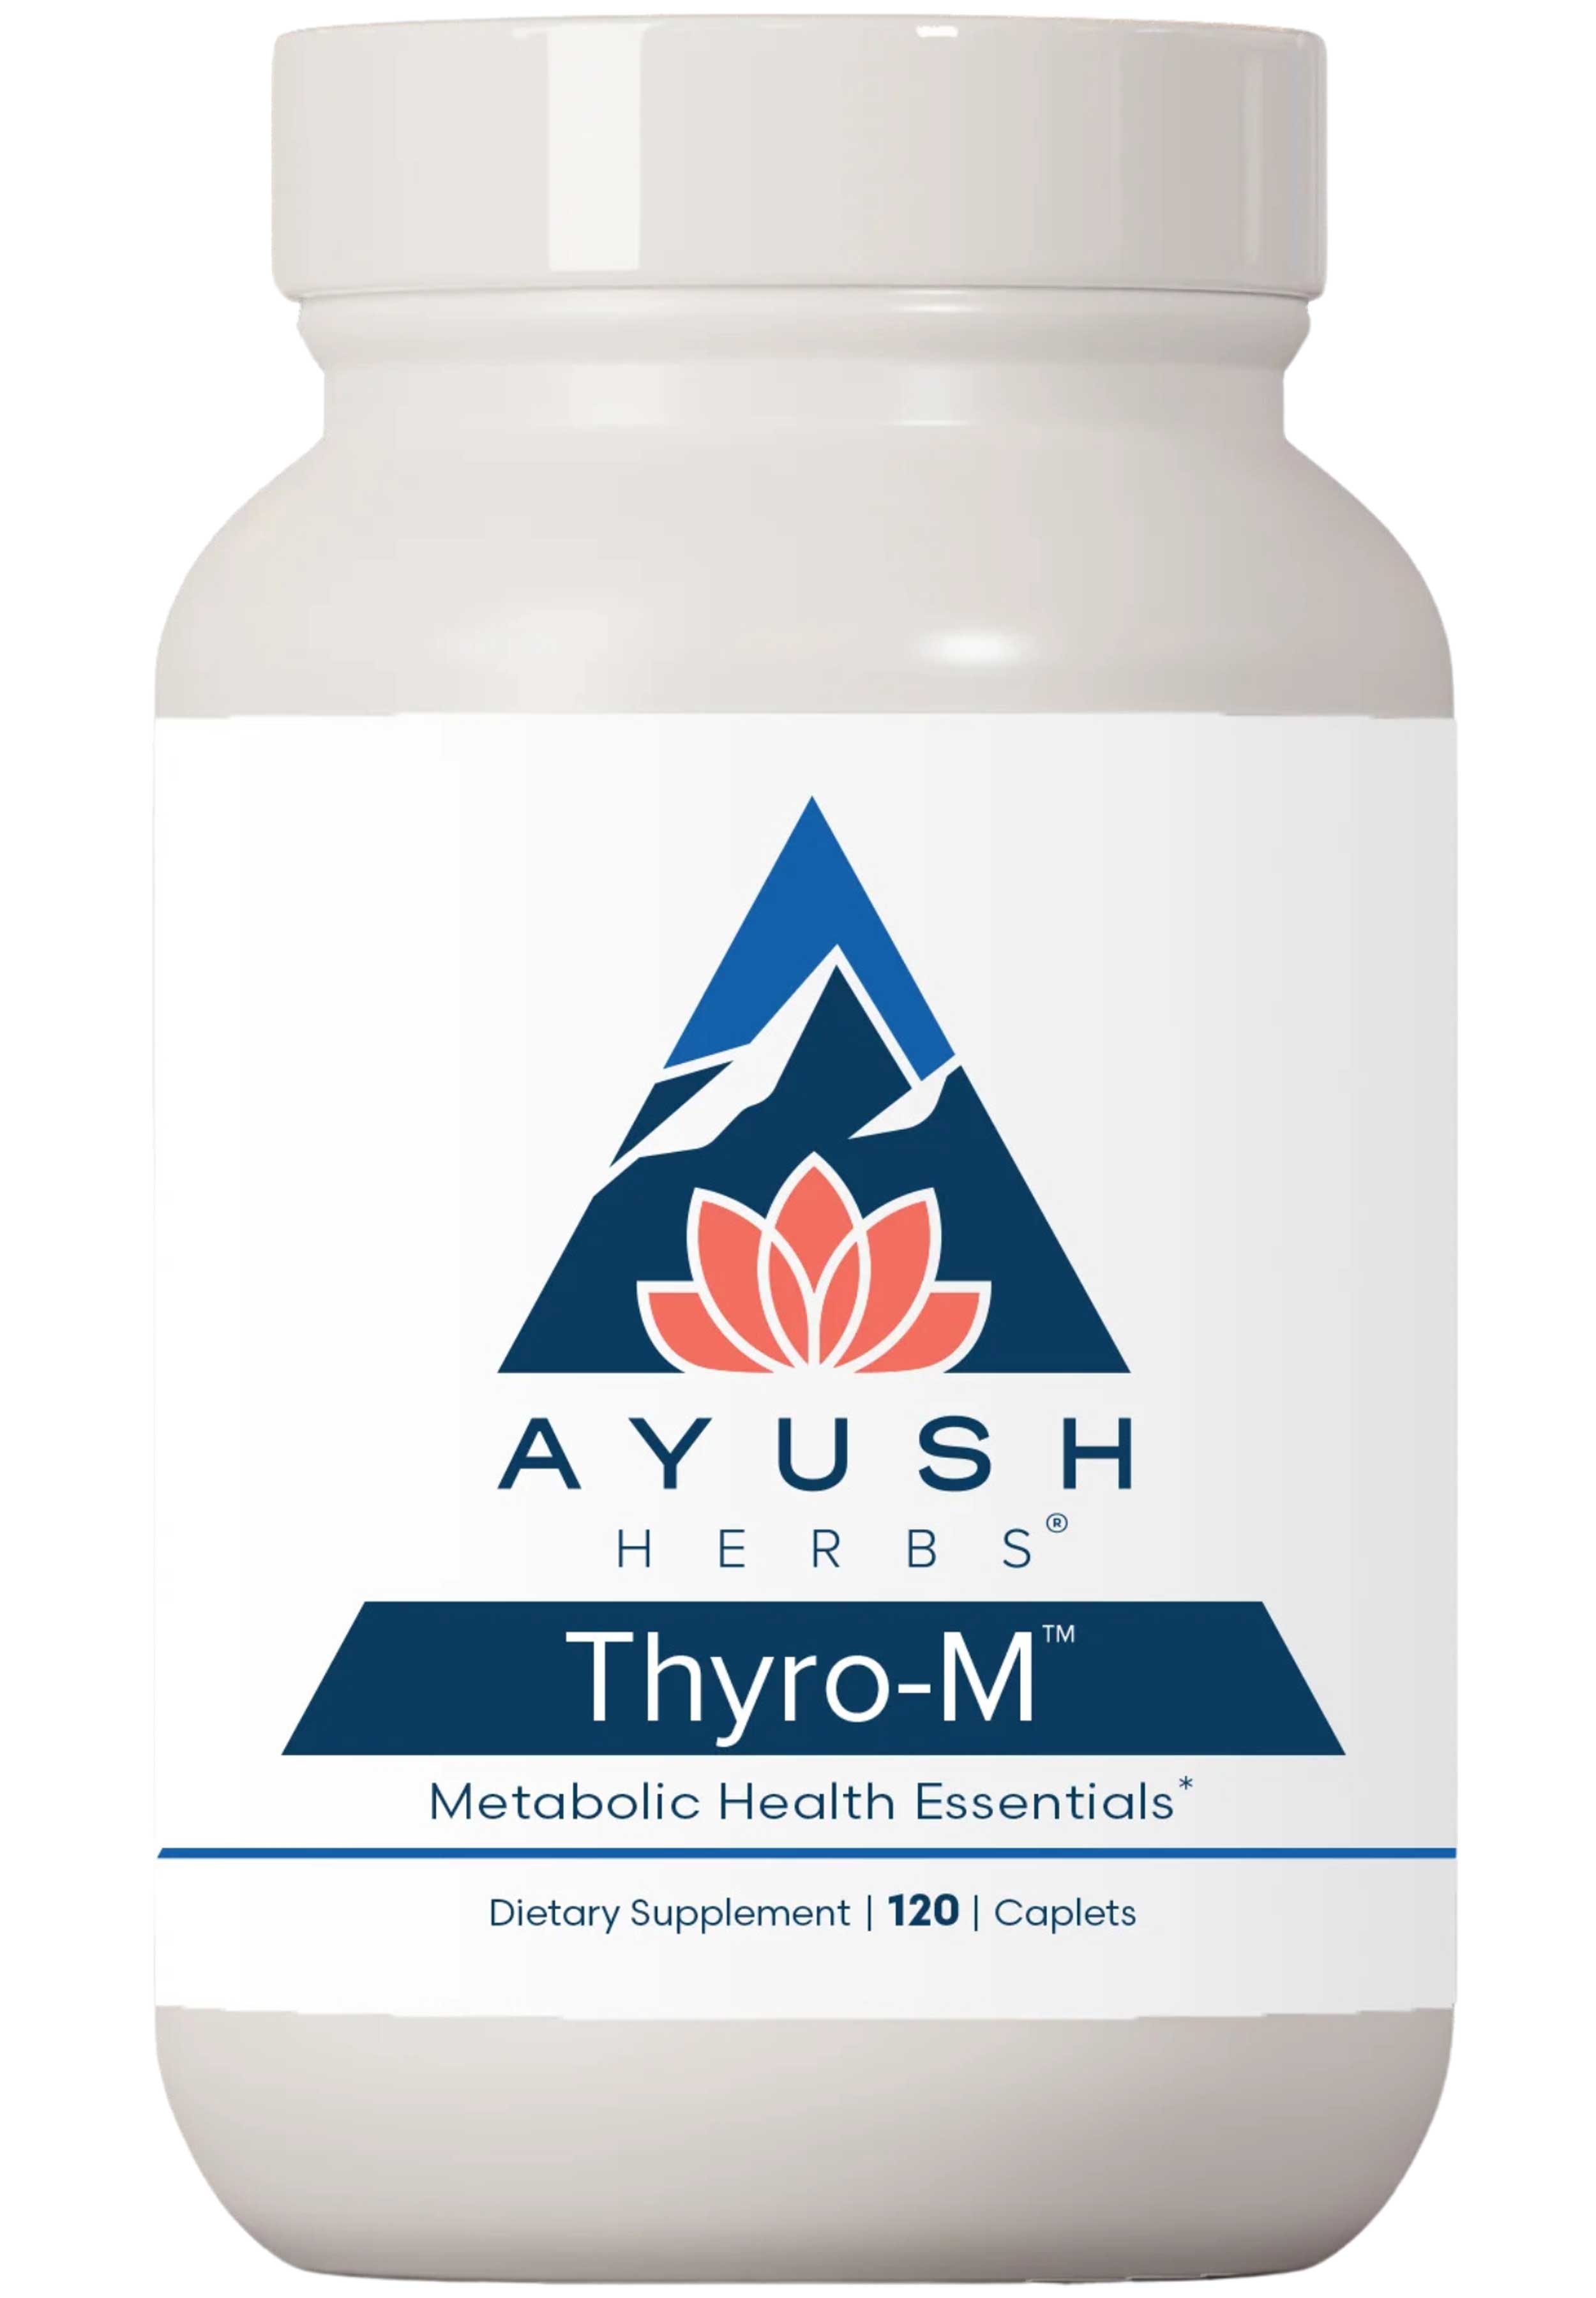 Ayush Herbs Thyro-M